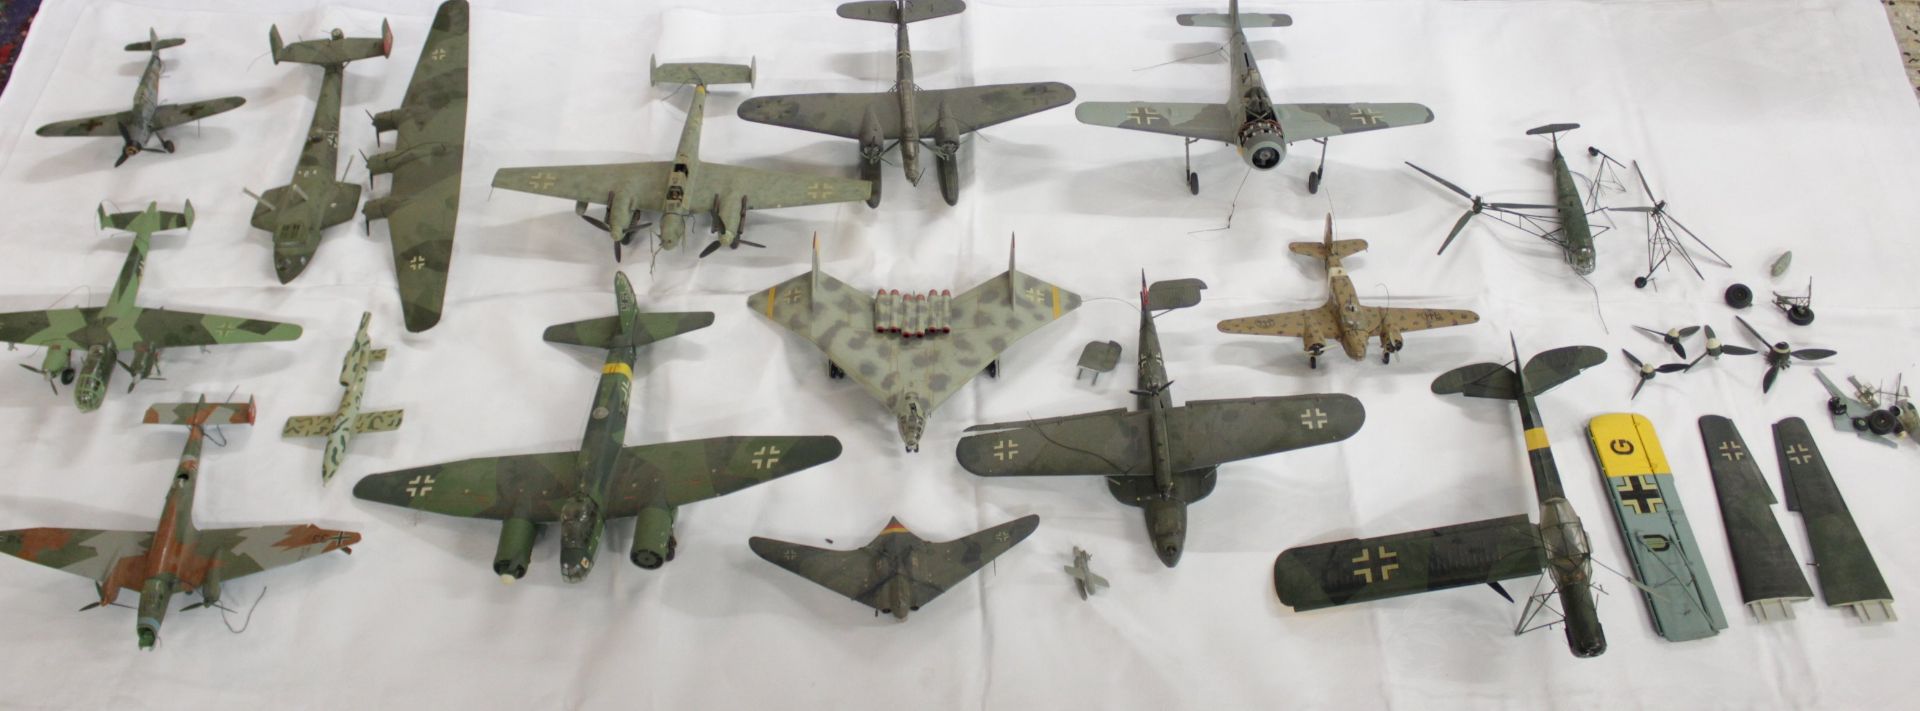 Konvolut div. Modell-Flugzeuge, meist mit Beschädigung (Teile lose, abgebrochen etc.), Vollständigk - Image 8 of 15